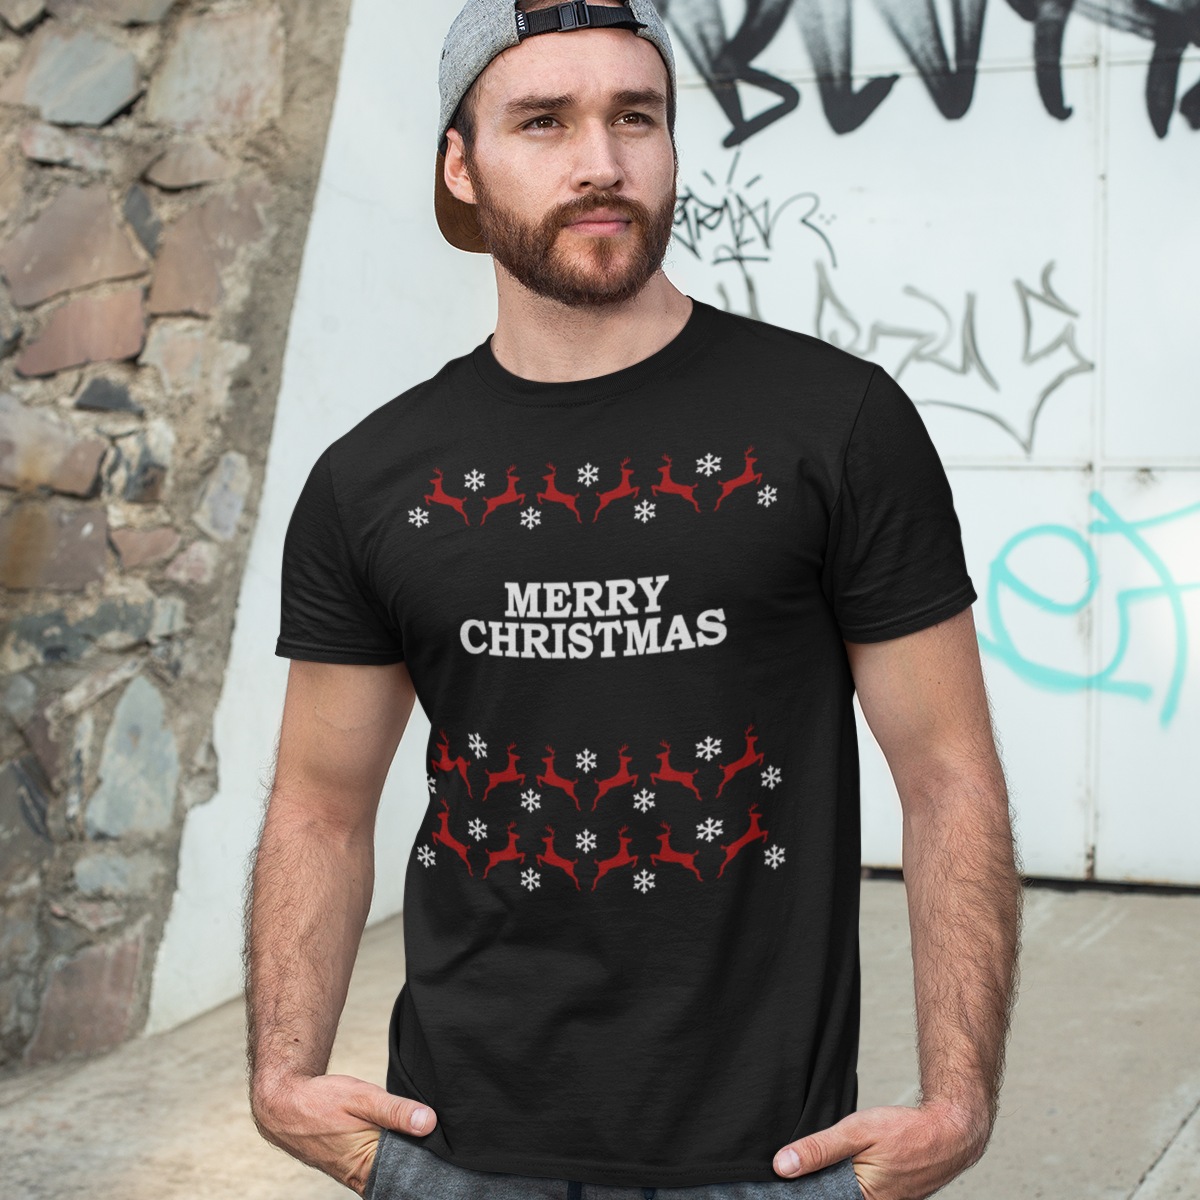 lineair Moment passie Vrolijk Kerst T-shirt Zwart - Merry Christmas Rendieren | Snel thuisbezorgd